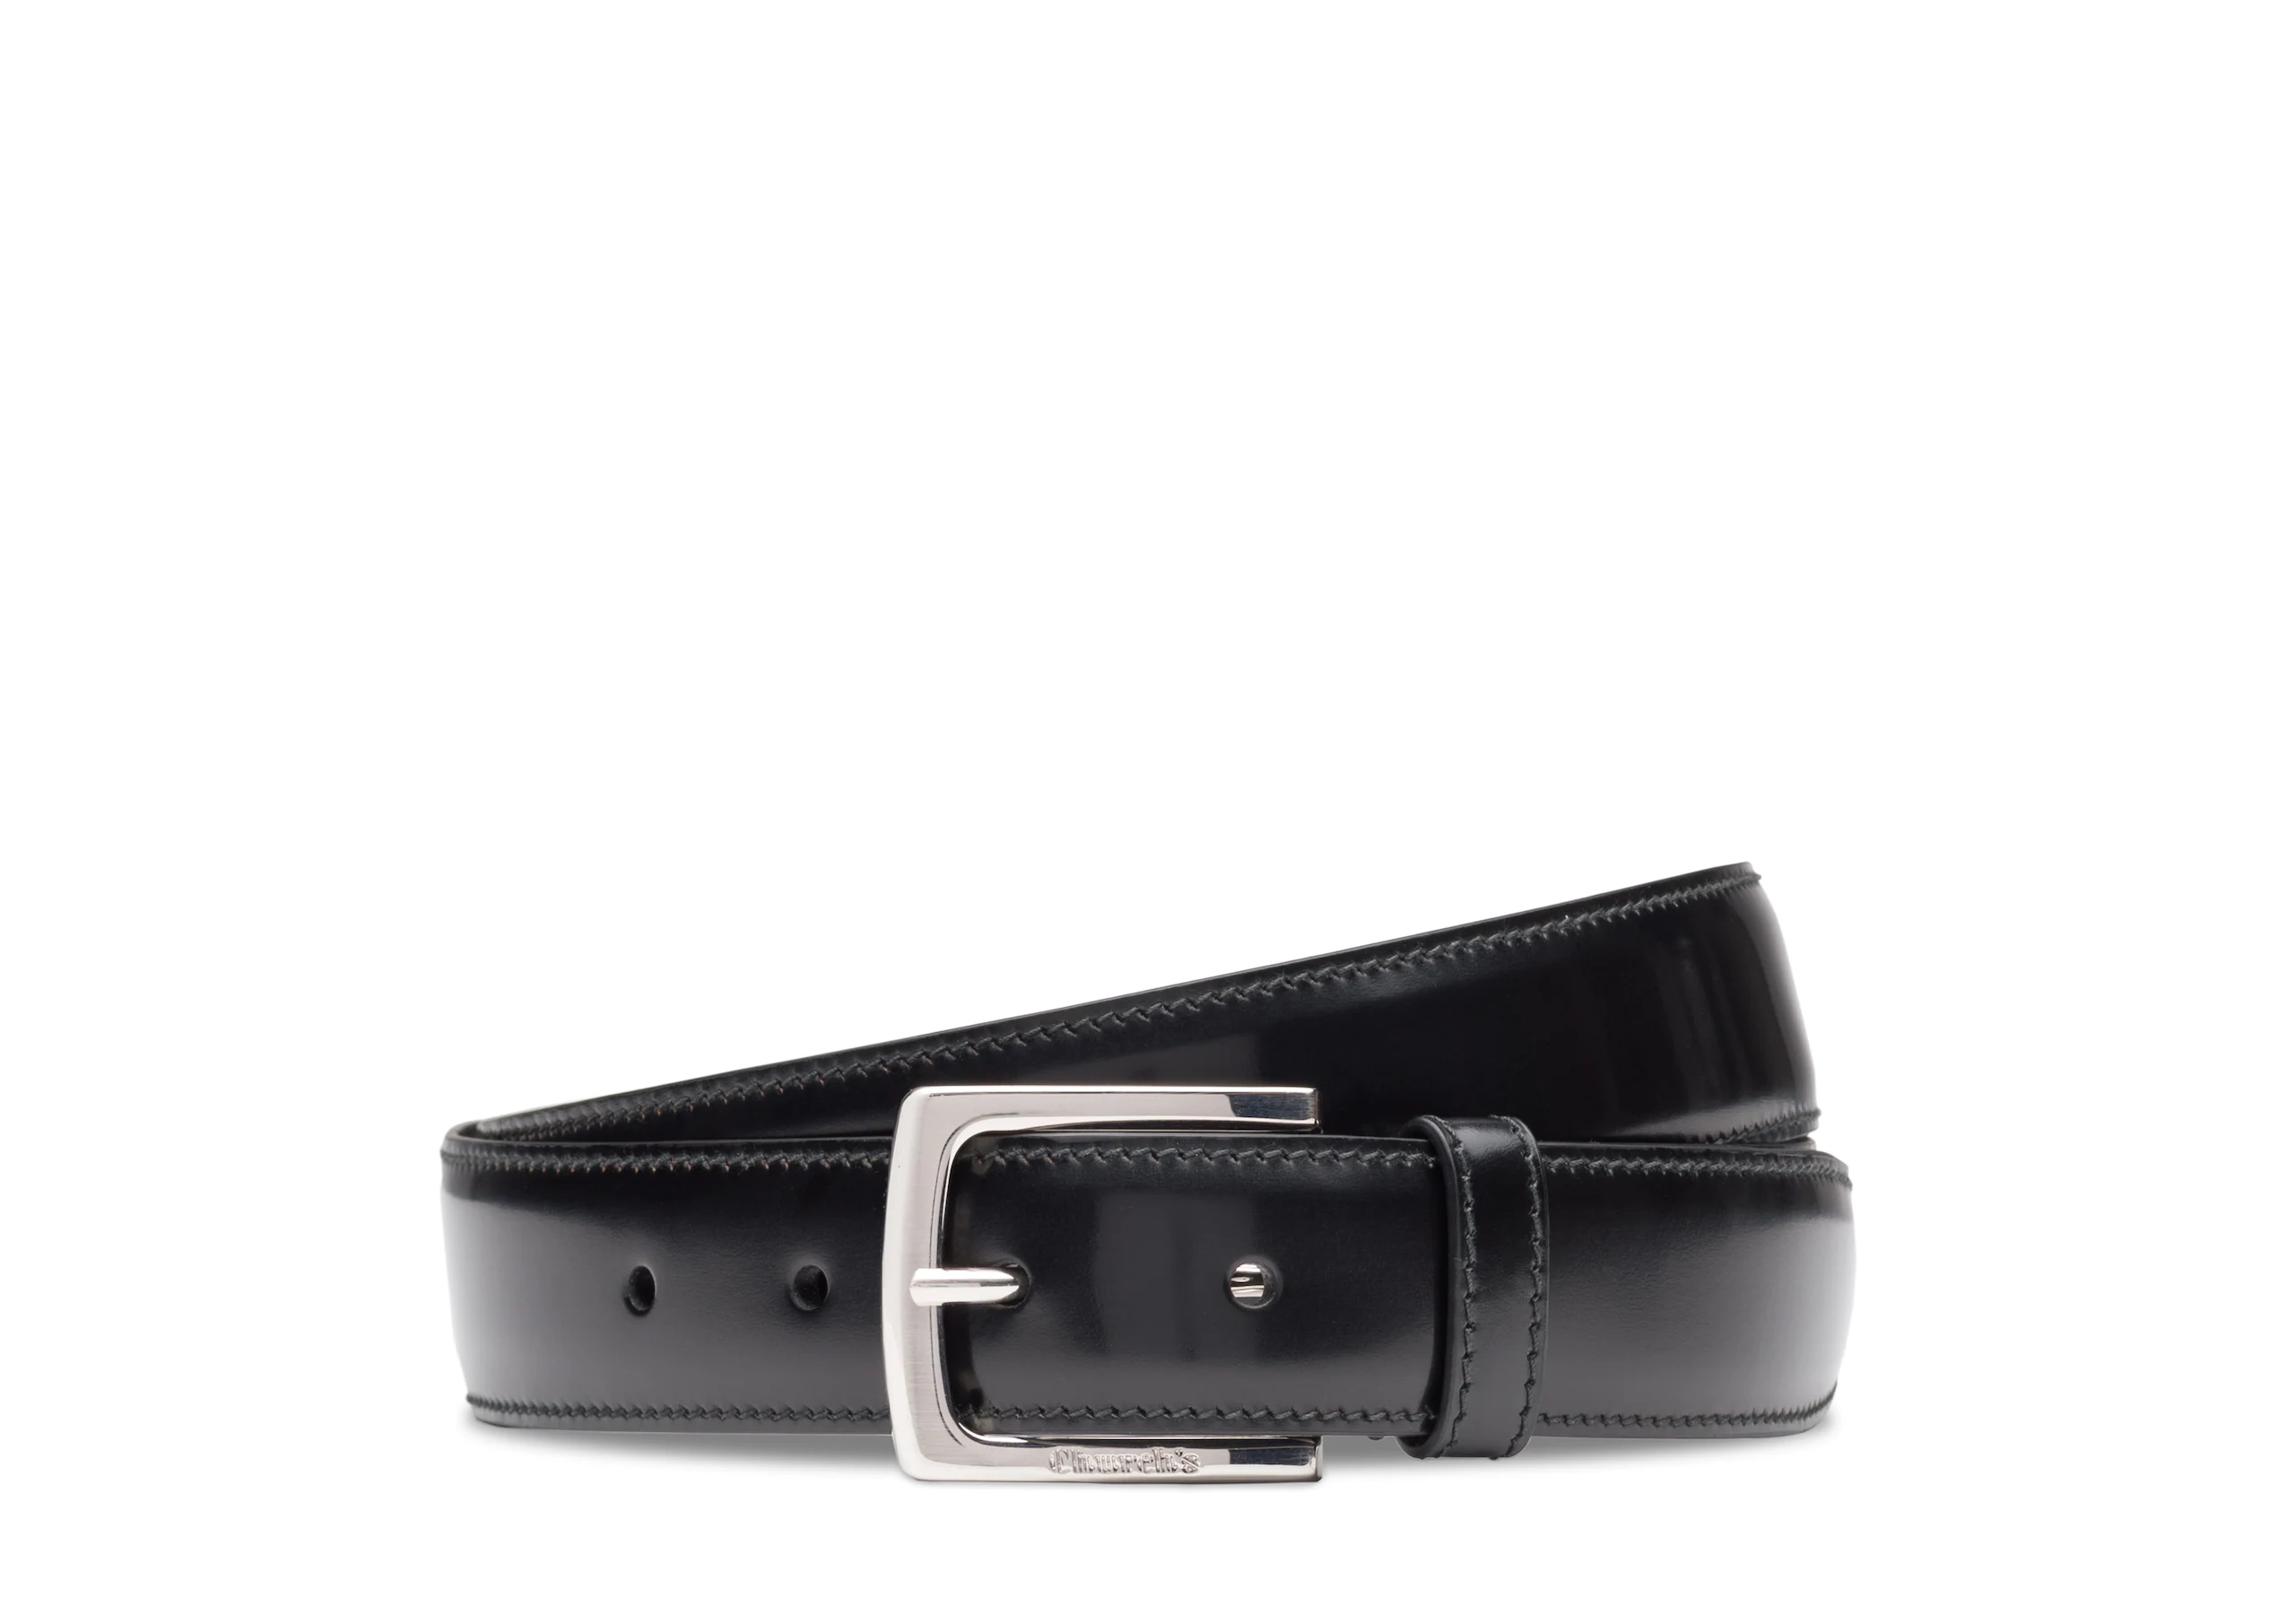 Square buckle belt
Polished Binder Leather Black - 1